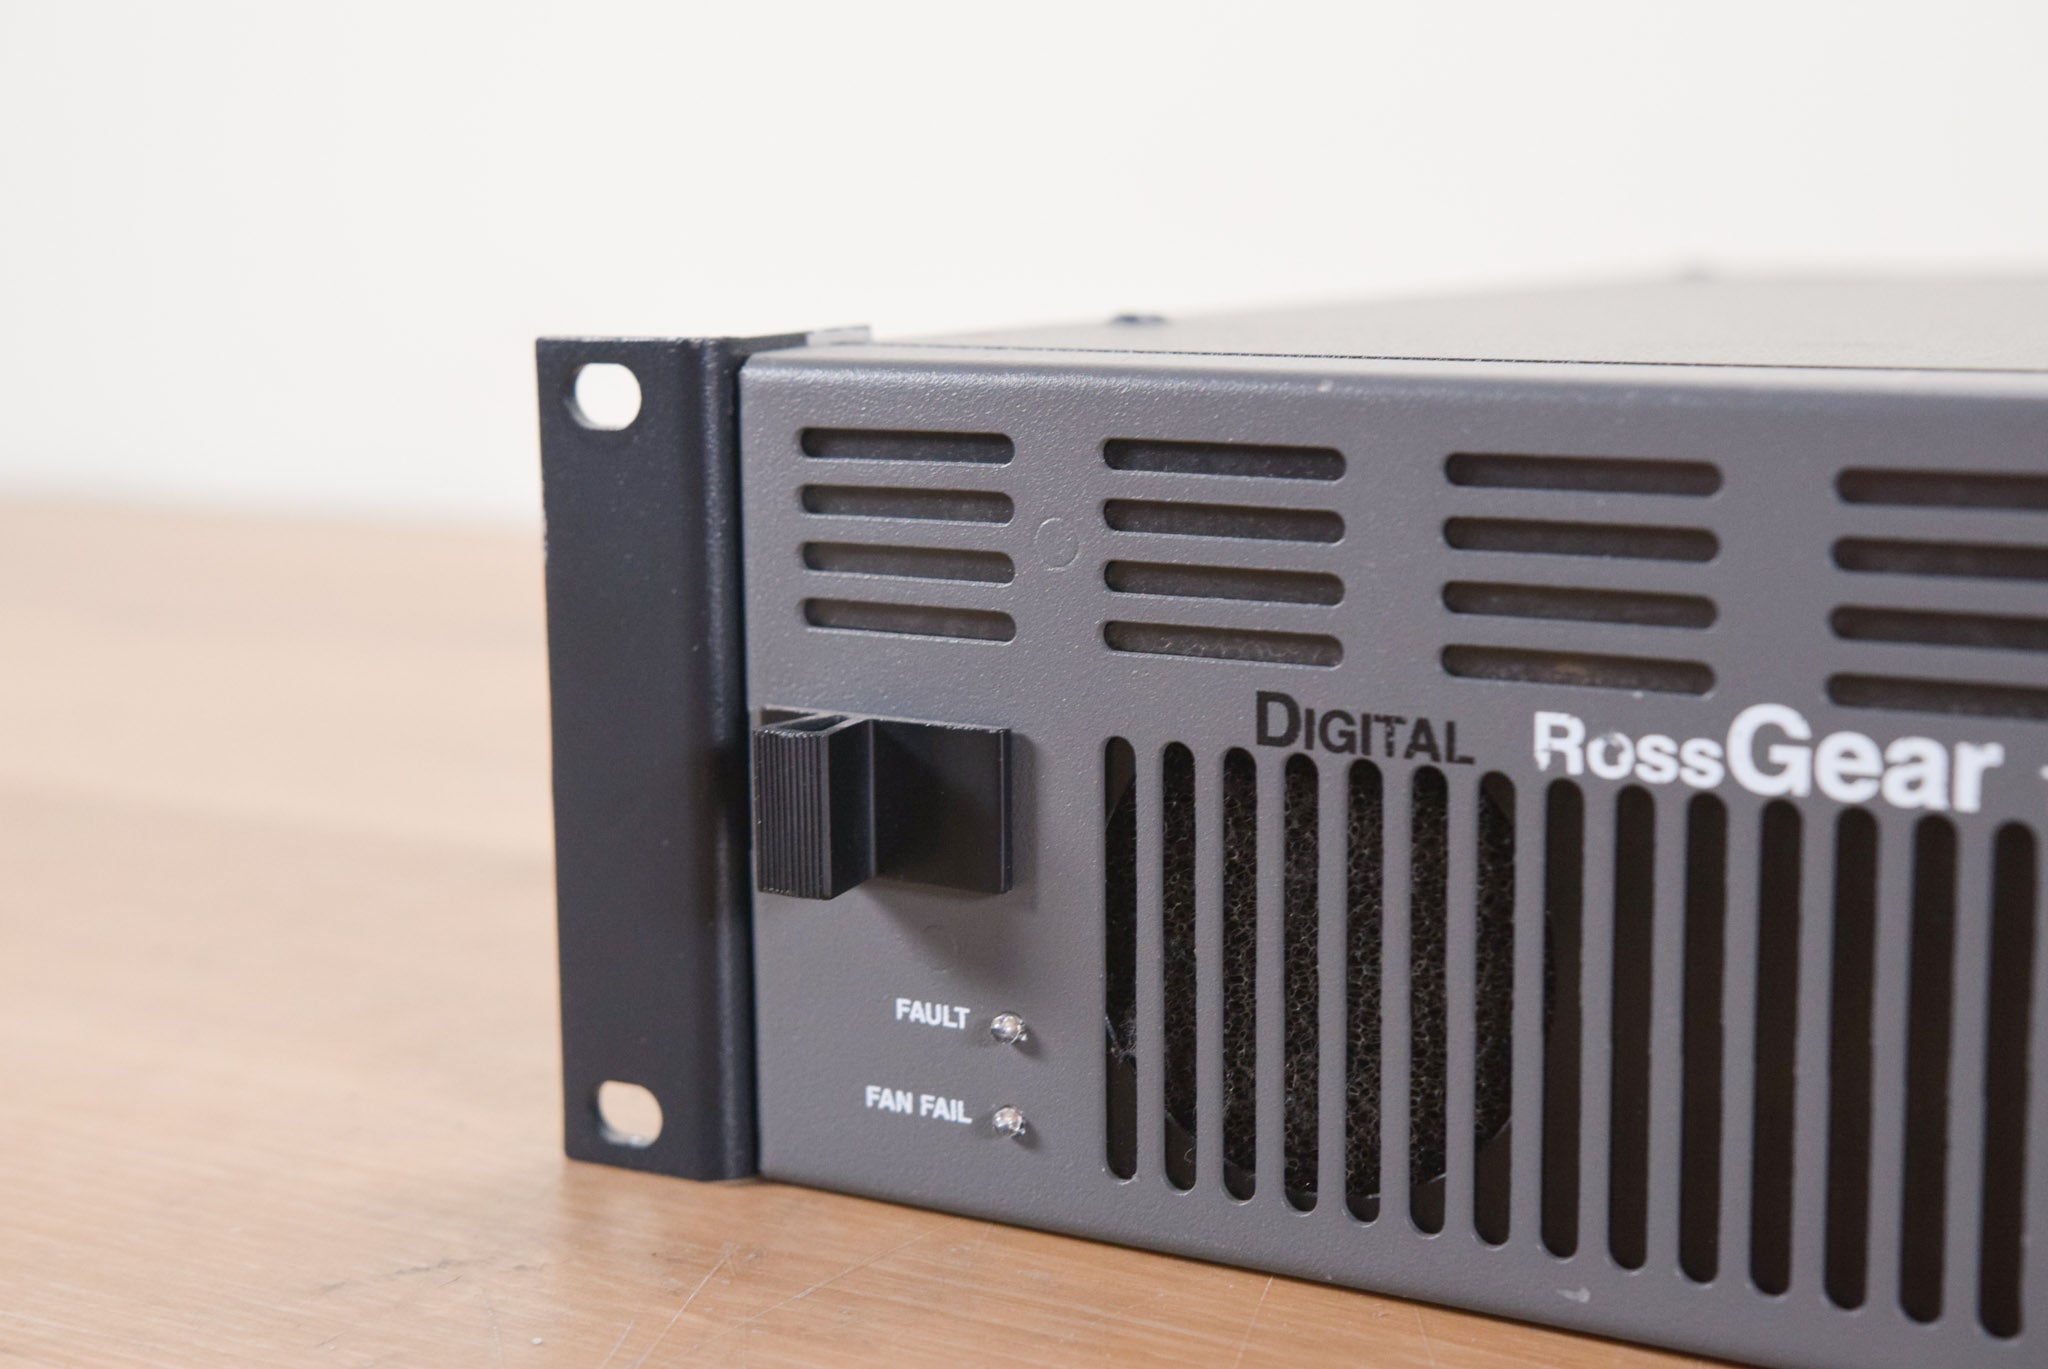 Ross DFR-8110A Digital RossGEAR Terminal